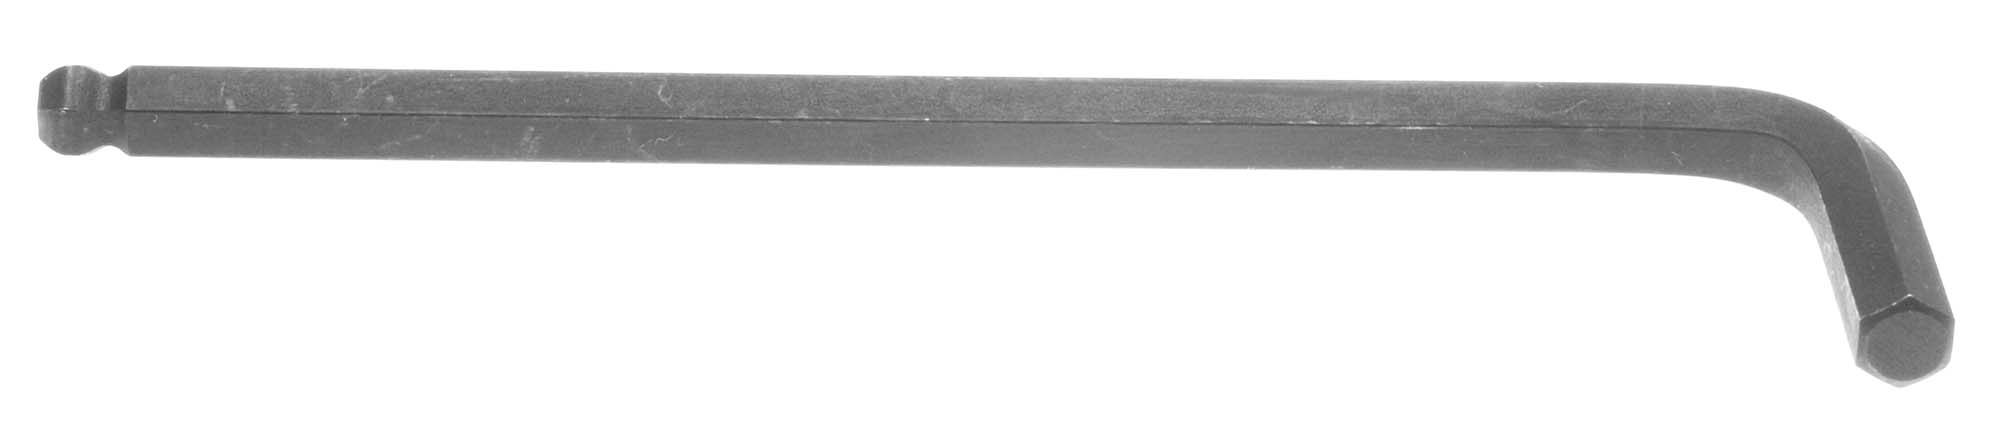 1/16" Bondhus Balldriver L-Wrench Hex Key